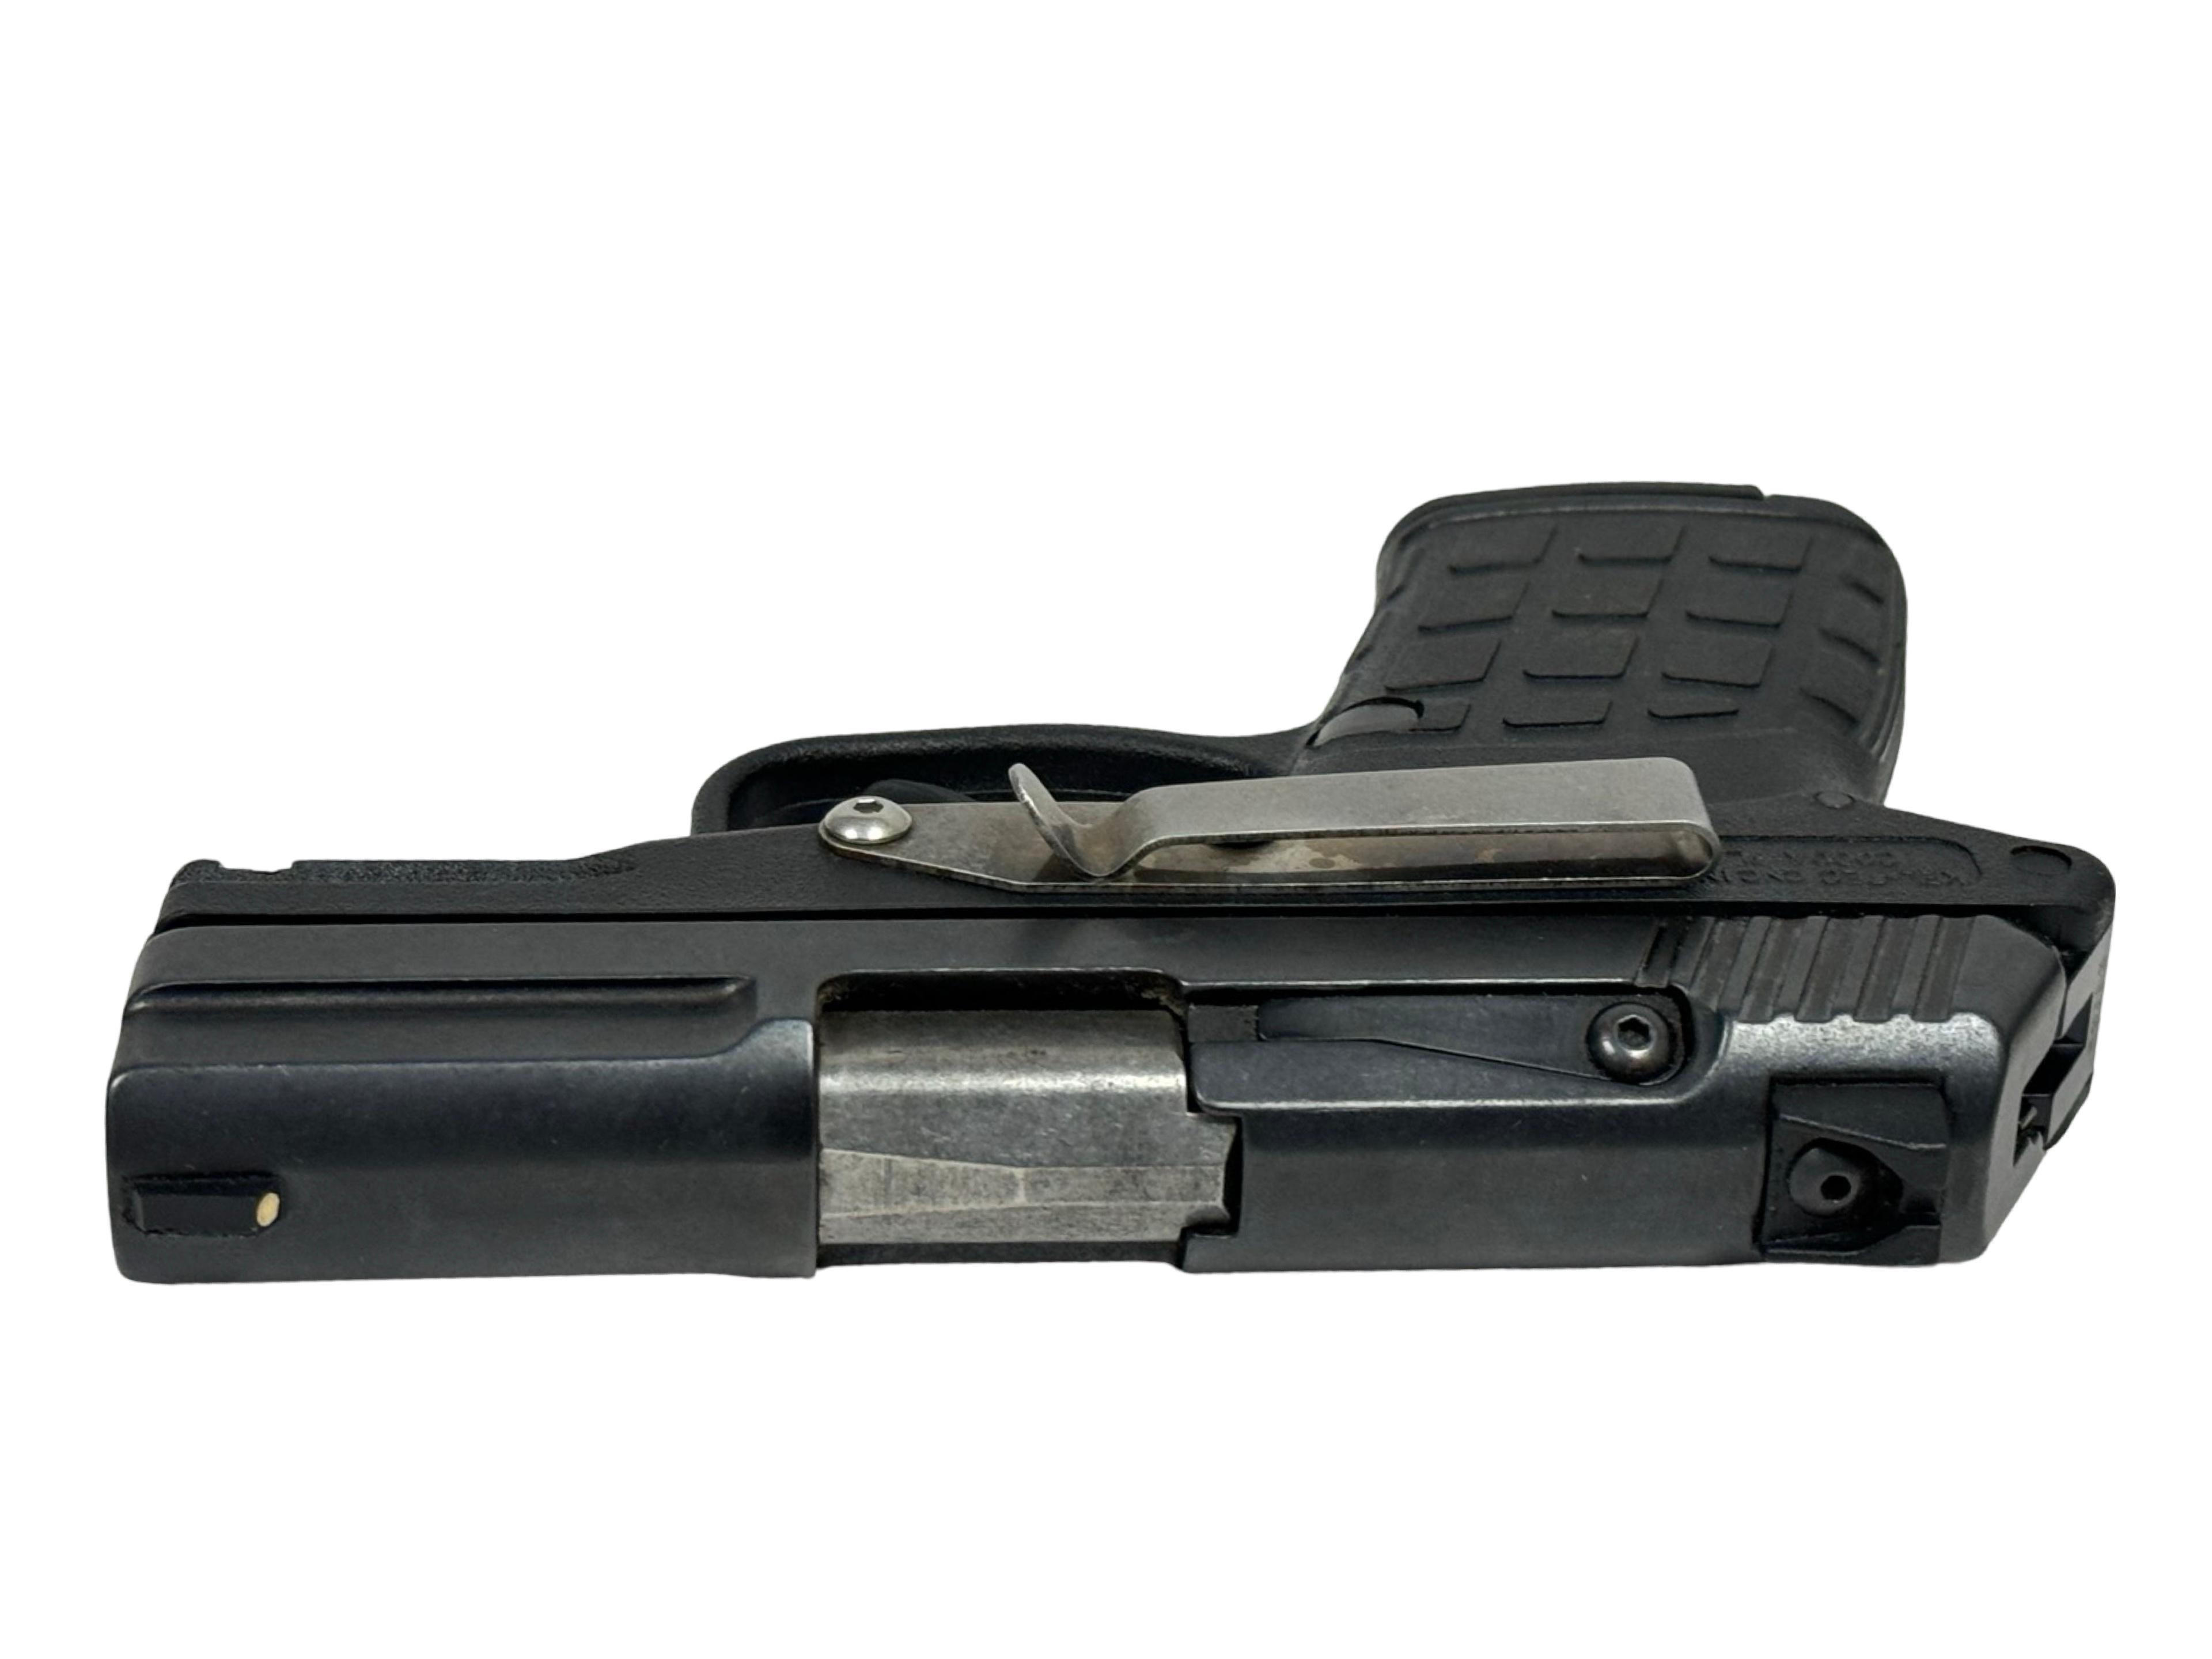 Kel-Tec PF-9 Semi-Automatic 9mm Pistol in Box